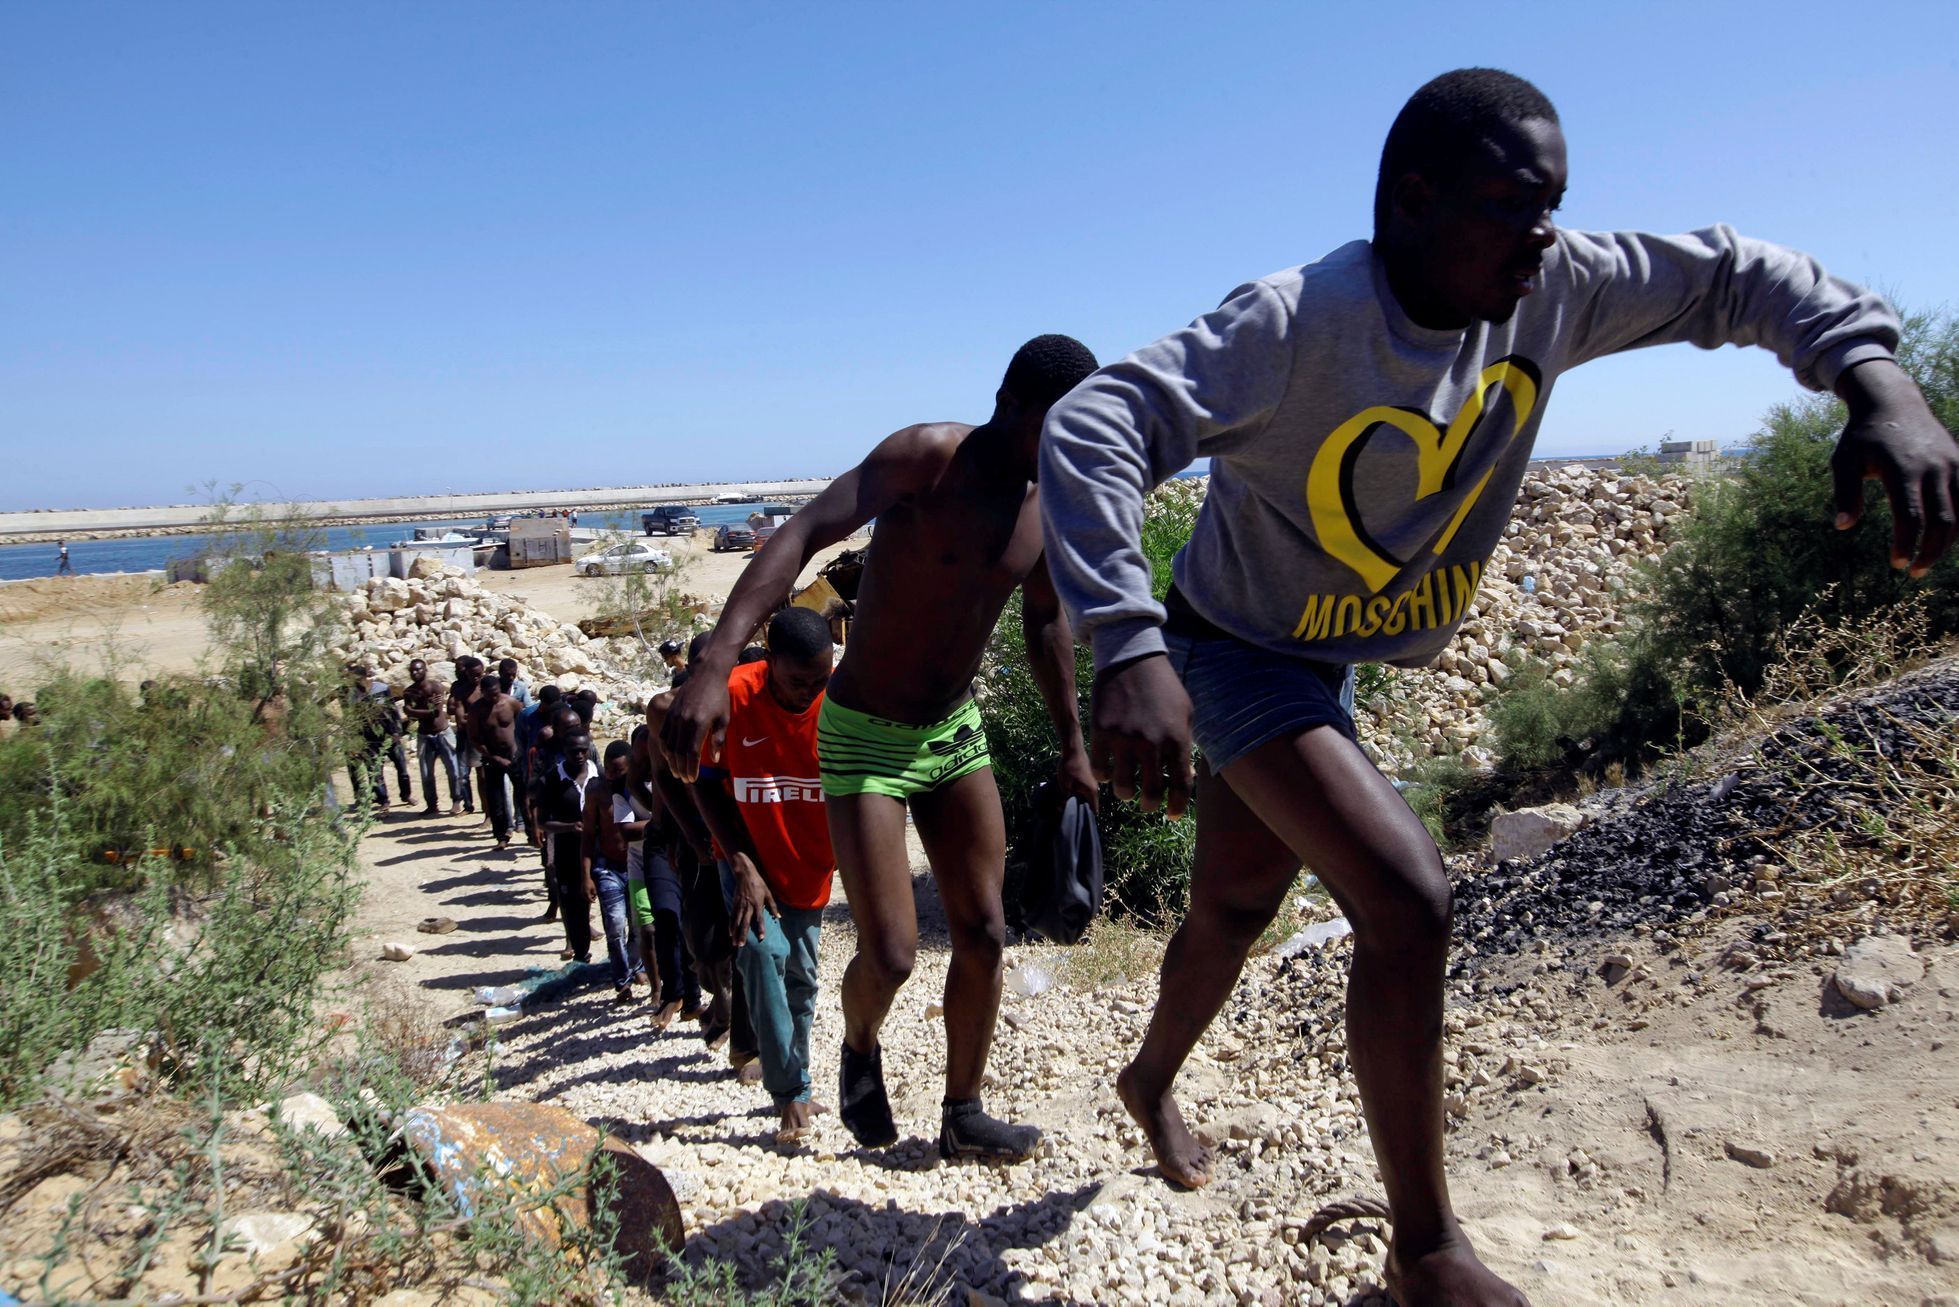 Skupina migrantů, zachráněných po převrácení člunu nedaleko libyjského Tripolisu.